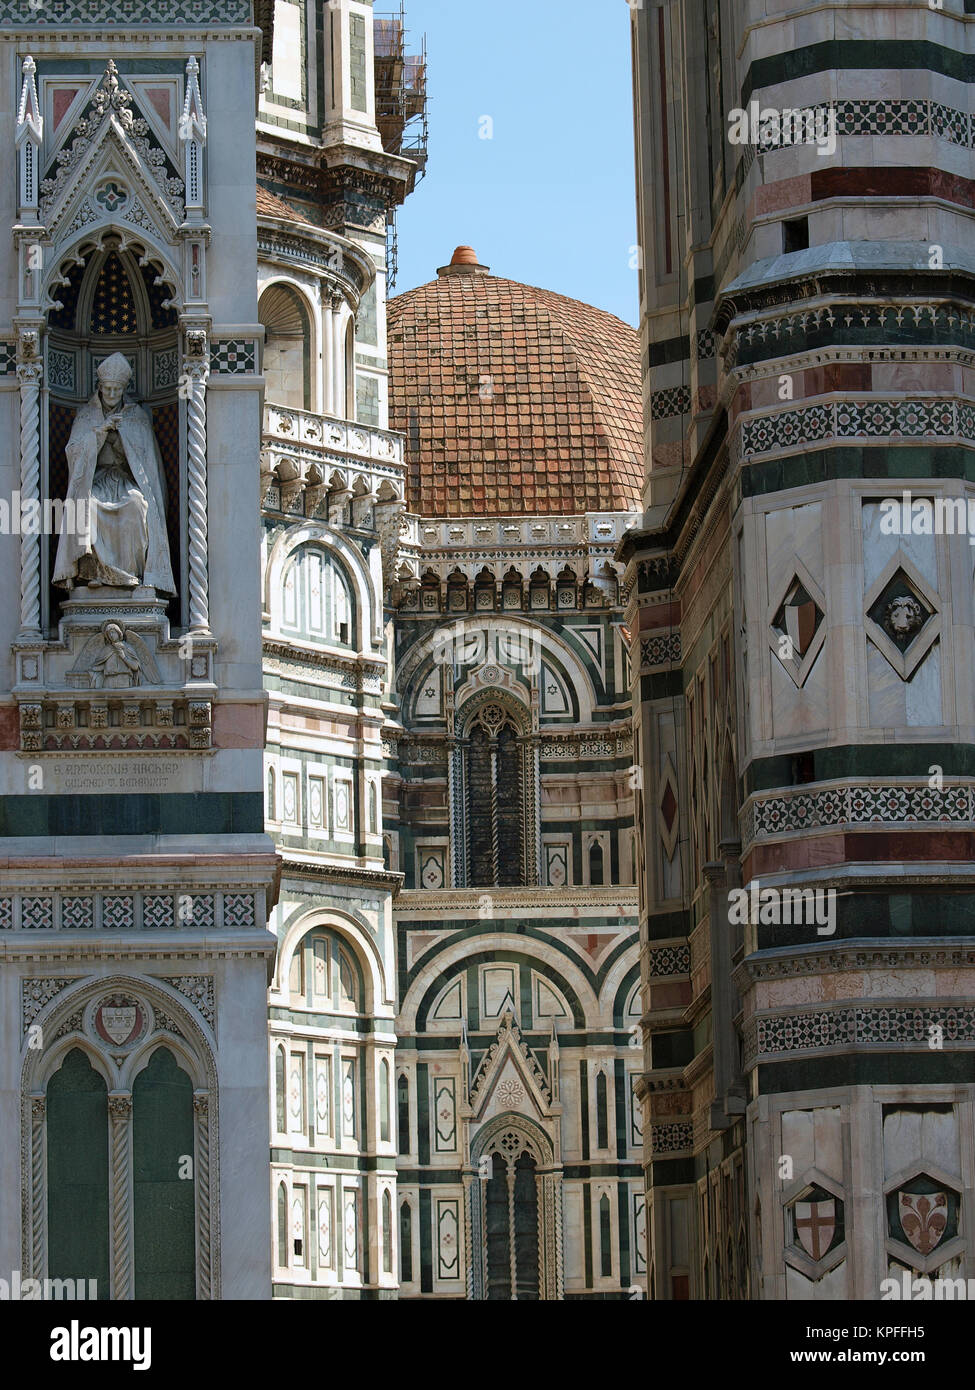 Basilica of Santa Maria del Fiore - Florence Stock Photo